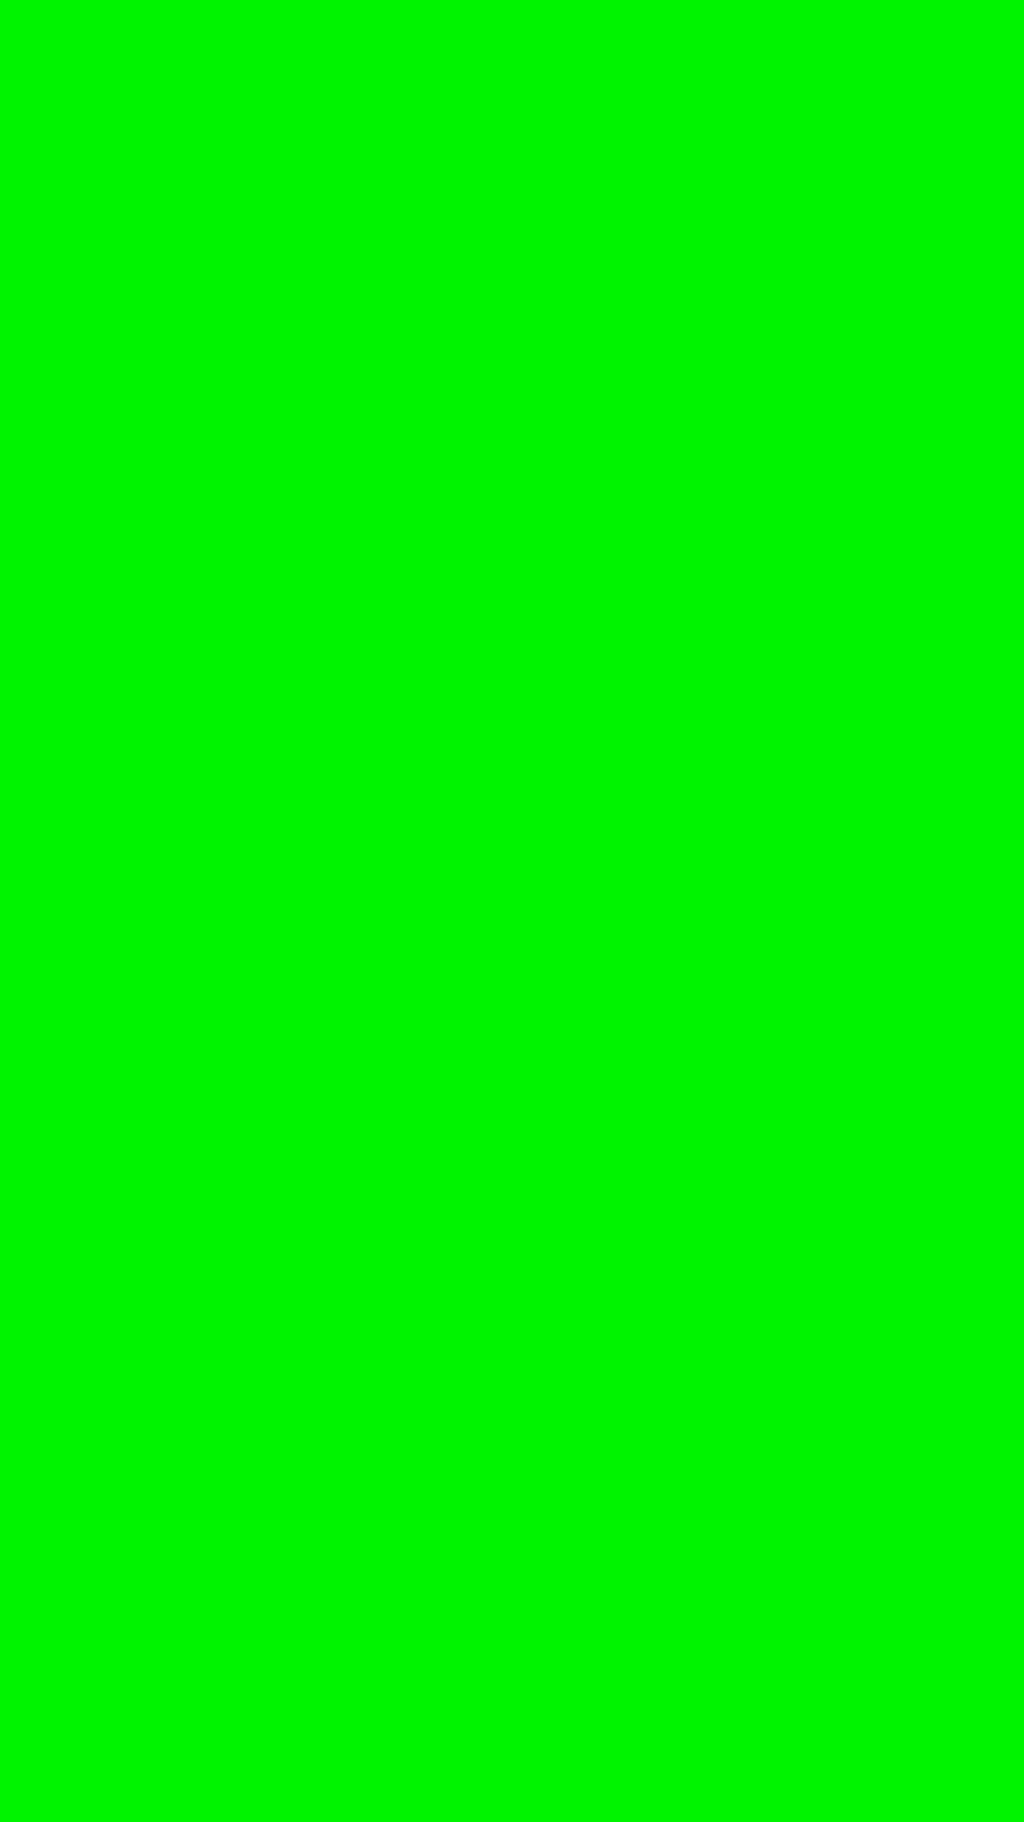 Green Screen 9 16 - KibrisPDR